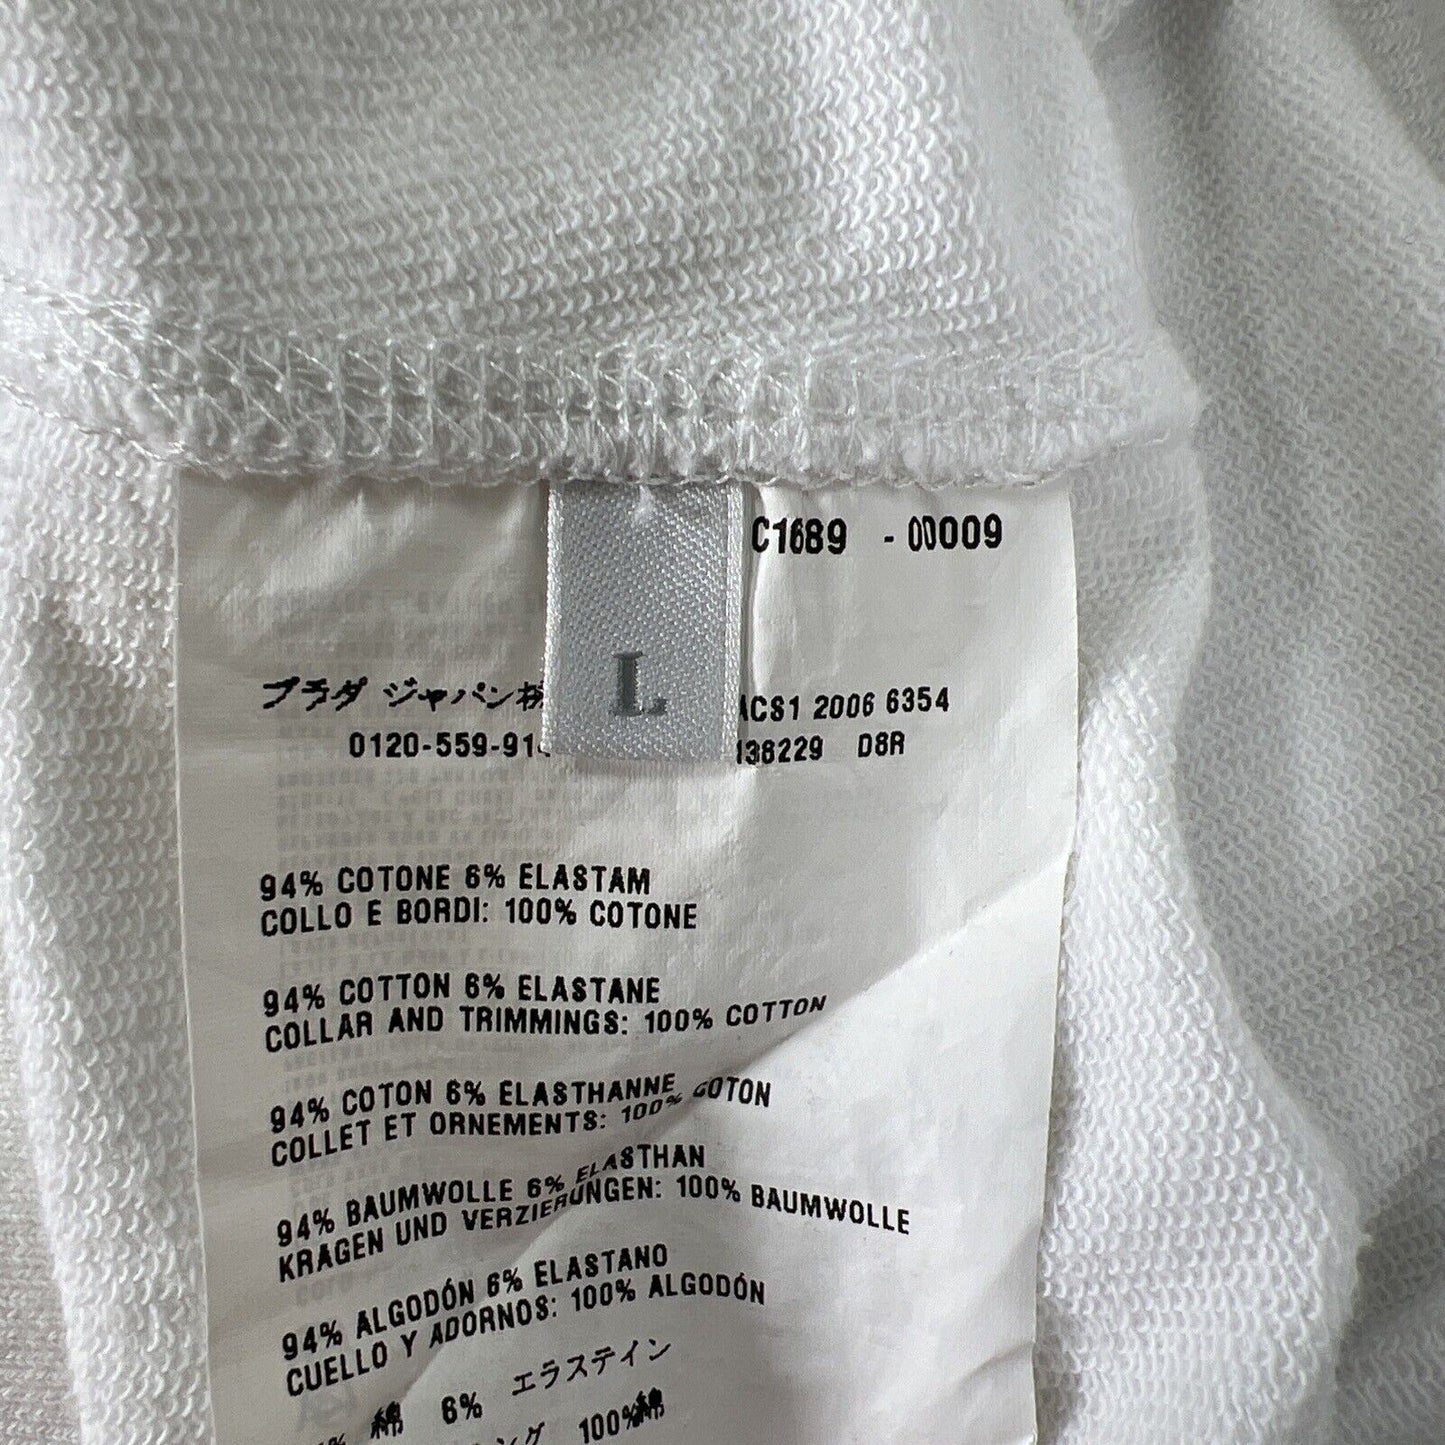 Prada Women's White Full Zip Cotton Sweatshirt - L